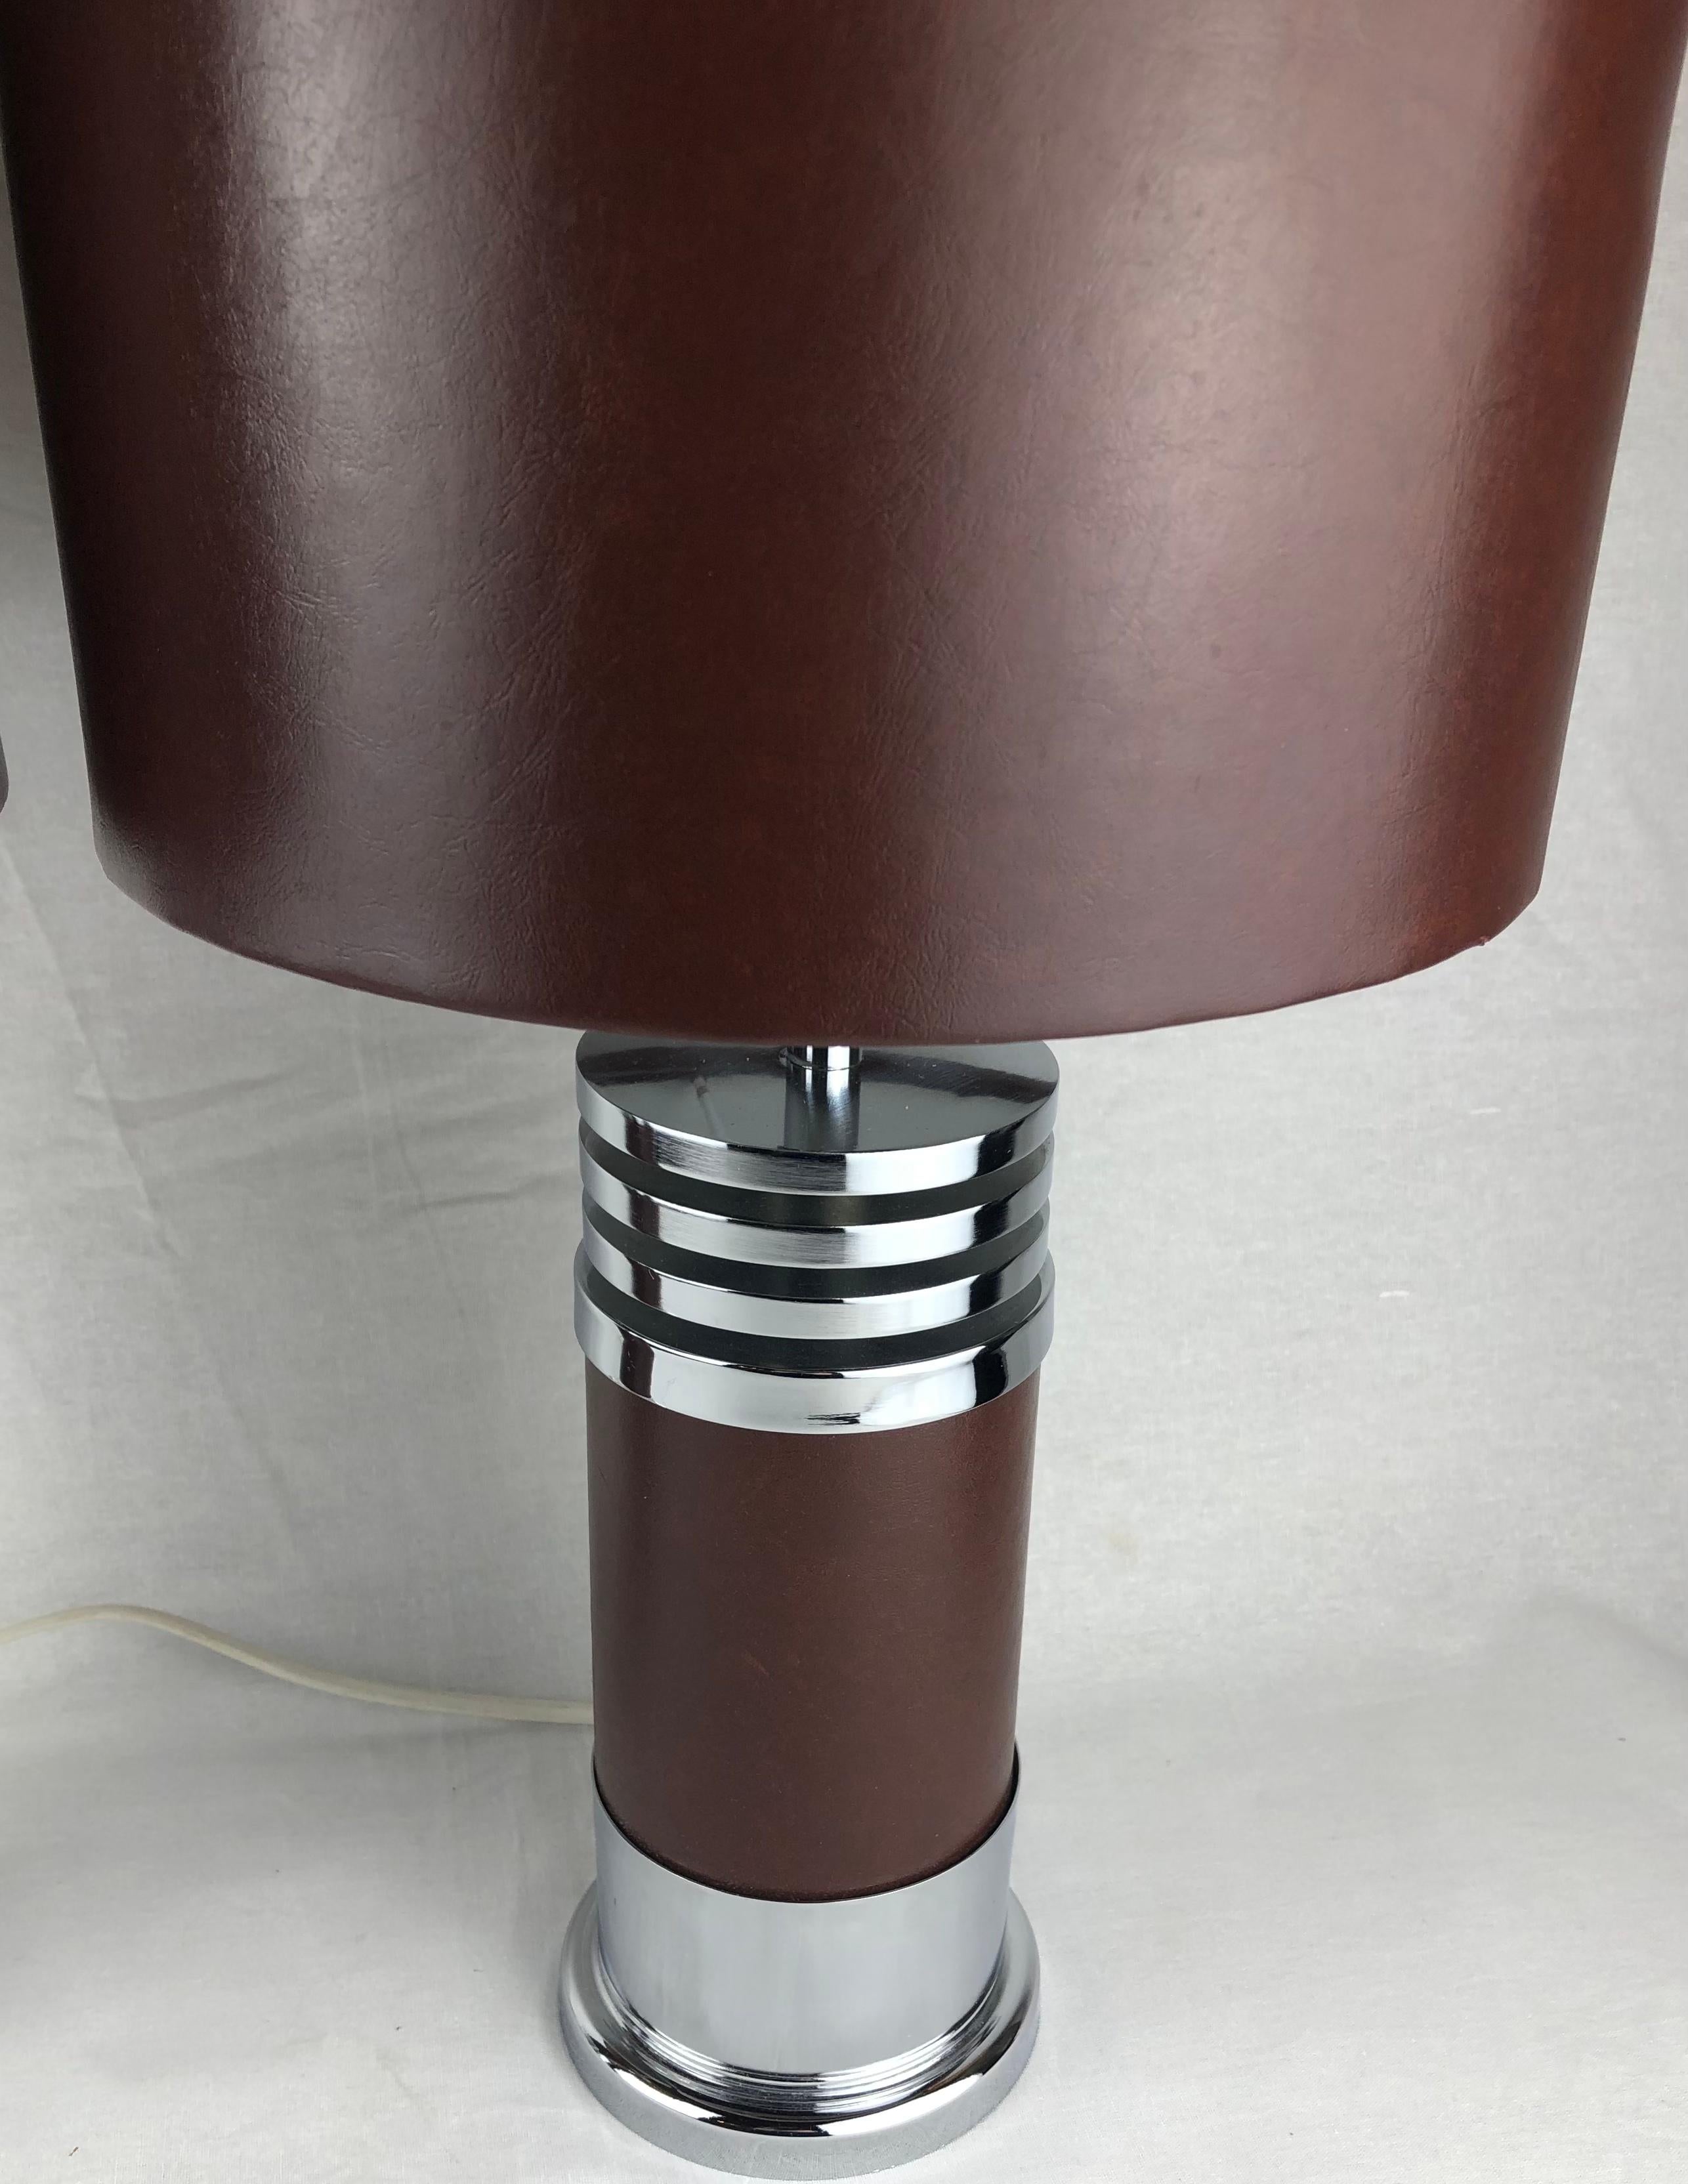 Ein elegantes Paar verchromter Tischlampen, entworfen für Roche Bobois.
Es sind herrlich schwere Stücke mit feiner Verarbeitung. 
In der Mitte befinden sich runde Lampenschirme, die mit sehr hochwertigem Kunstleder ausgestattet sind. 

Hergestellt